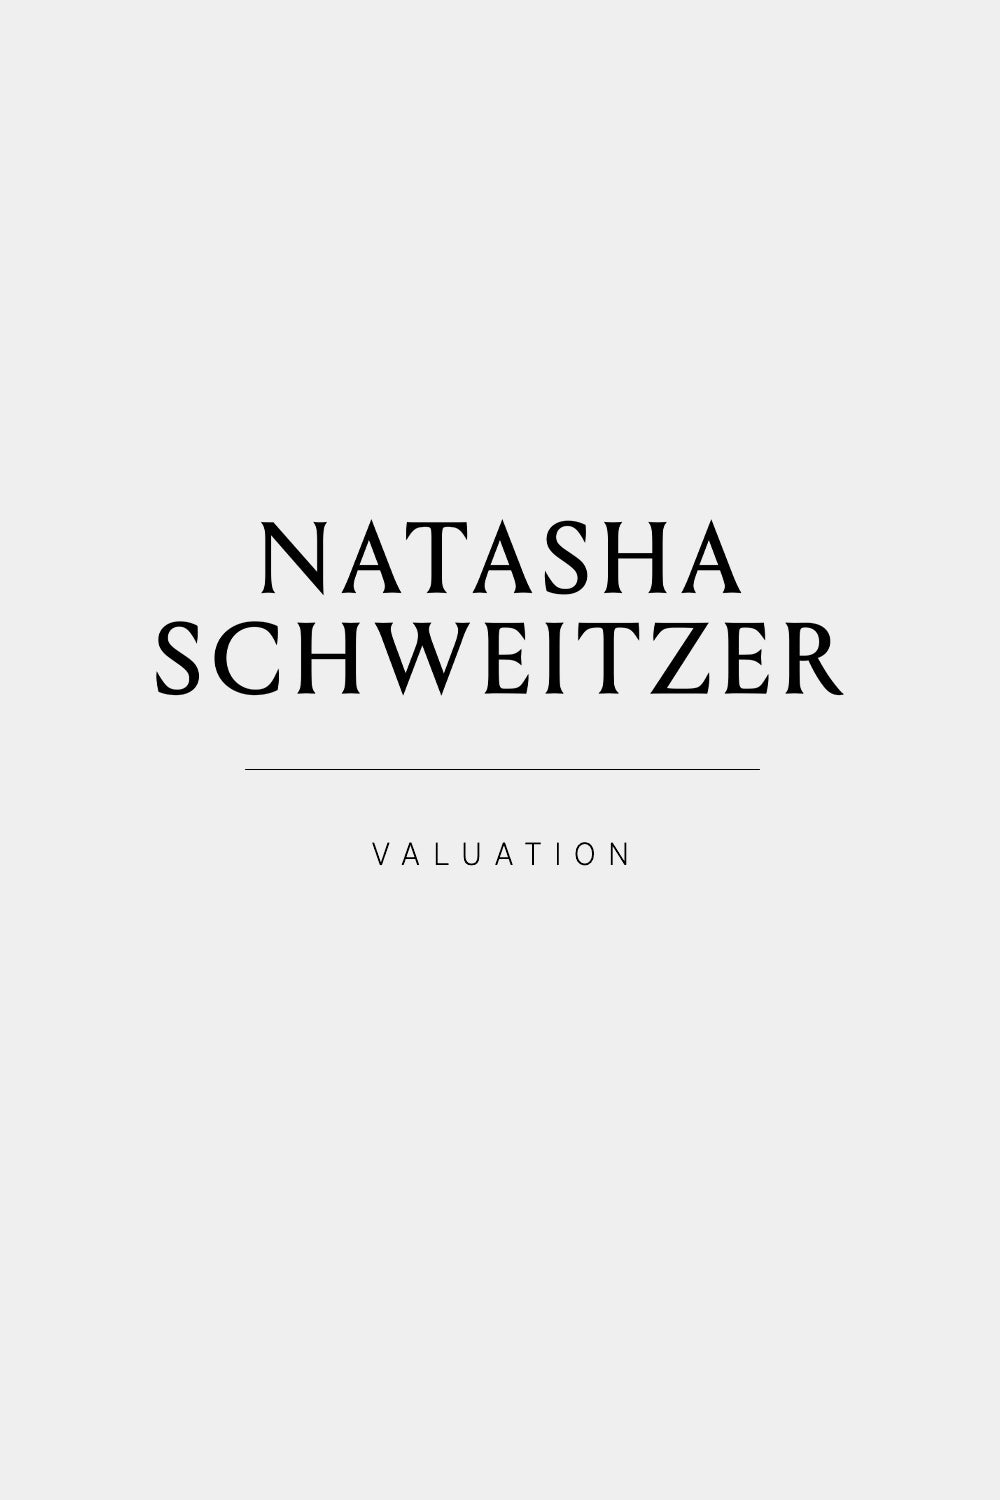 Valuation| Natasha Schweitzer